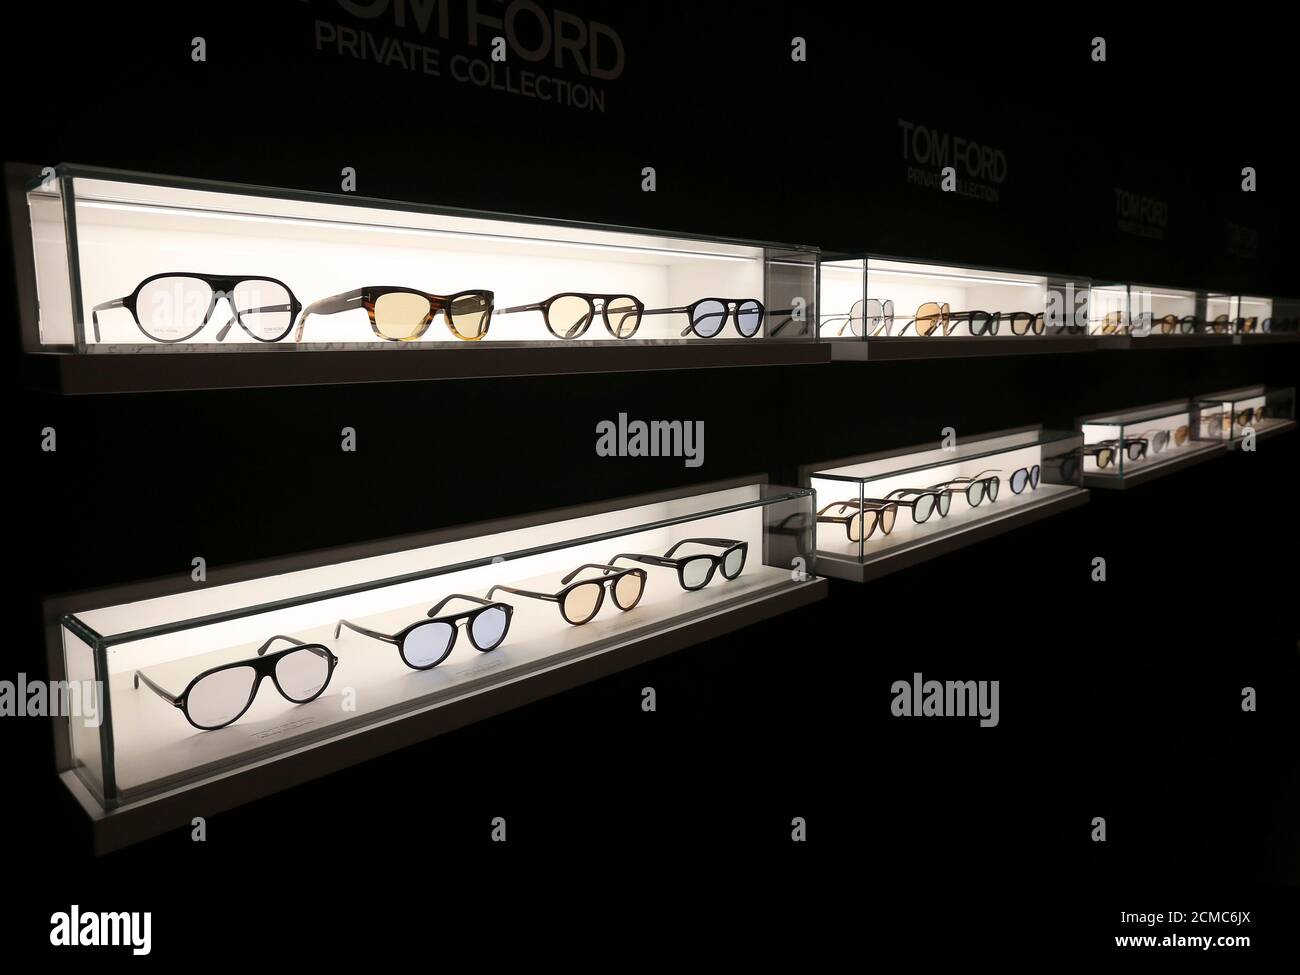 Gli occhiali da sole della collezione privata di Tom Ford sono presenti  alla fiera Mido per occhiali e occhiali a Milano, 28 febbraio 2016.  REUTERS/Stefano Rellandini Foto stock - Alamy